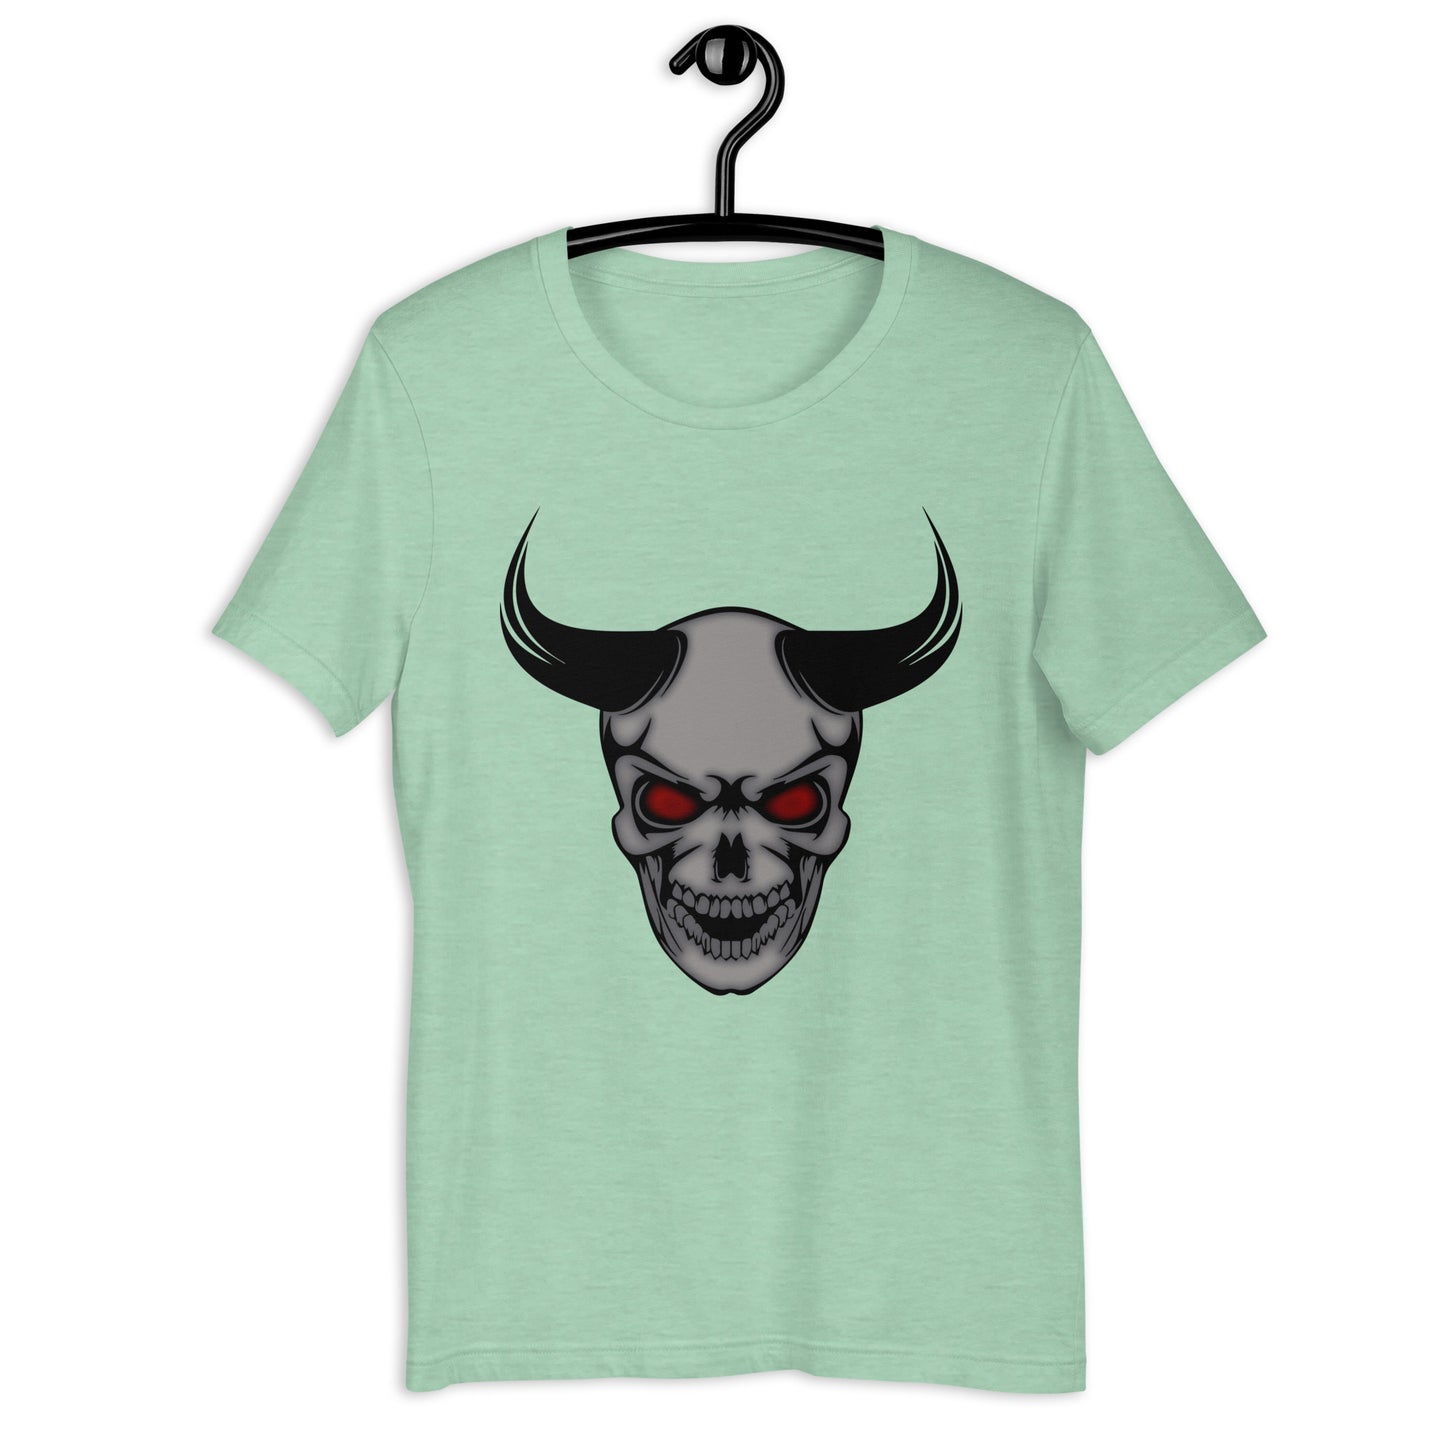 Devil’s Advocate - Unisex t-shirt